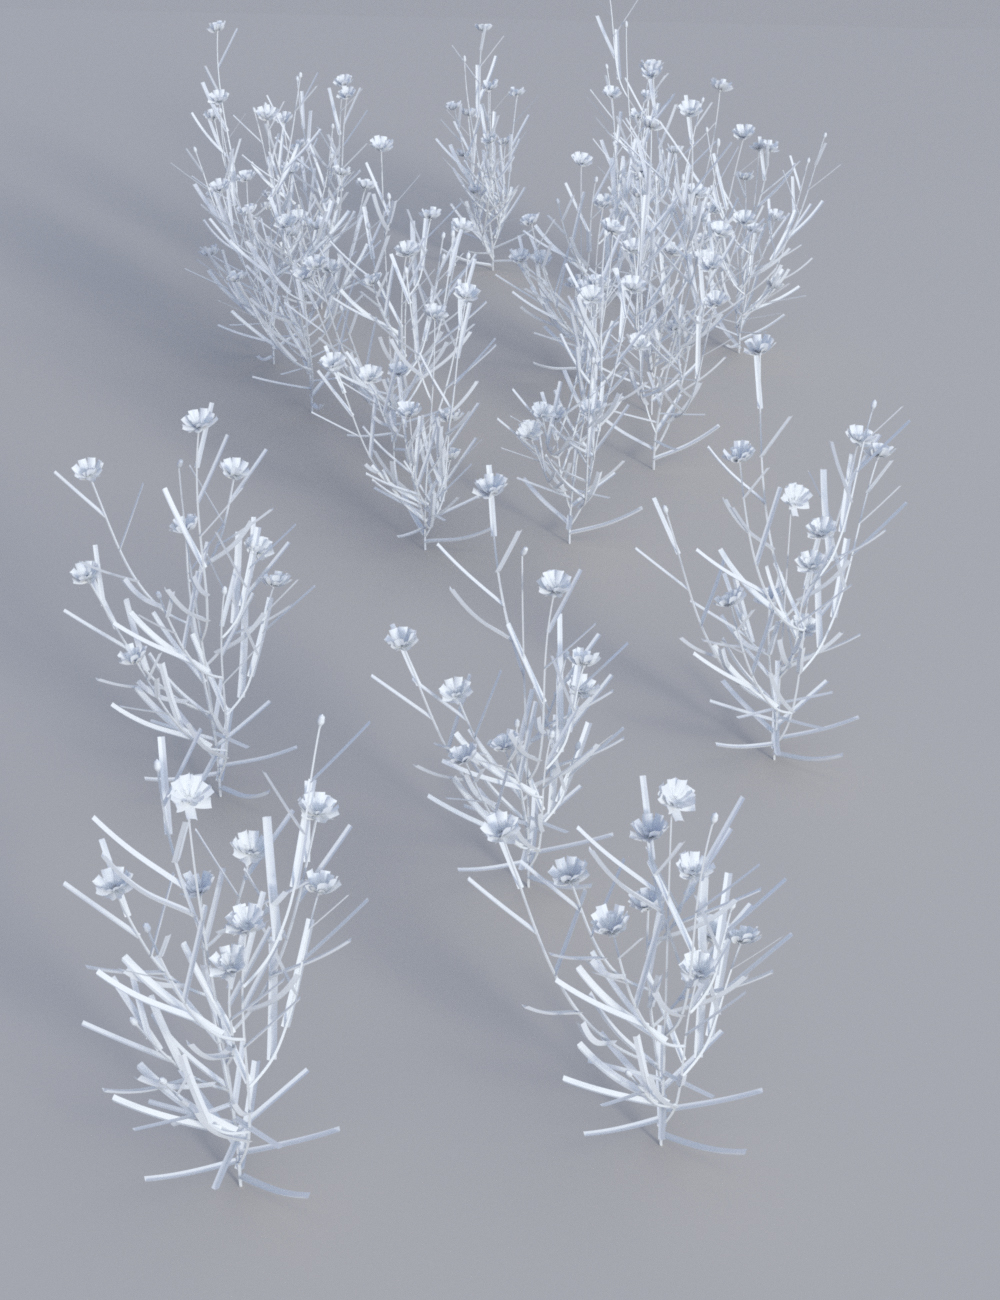 Wild Flower Plants vol 4 - Wheatfields by: MartinJFrost, 3D Models by Daz 3D